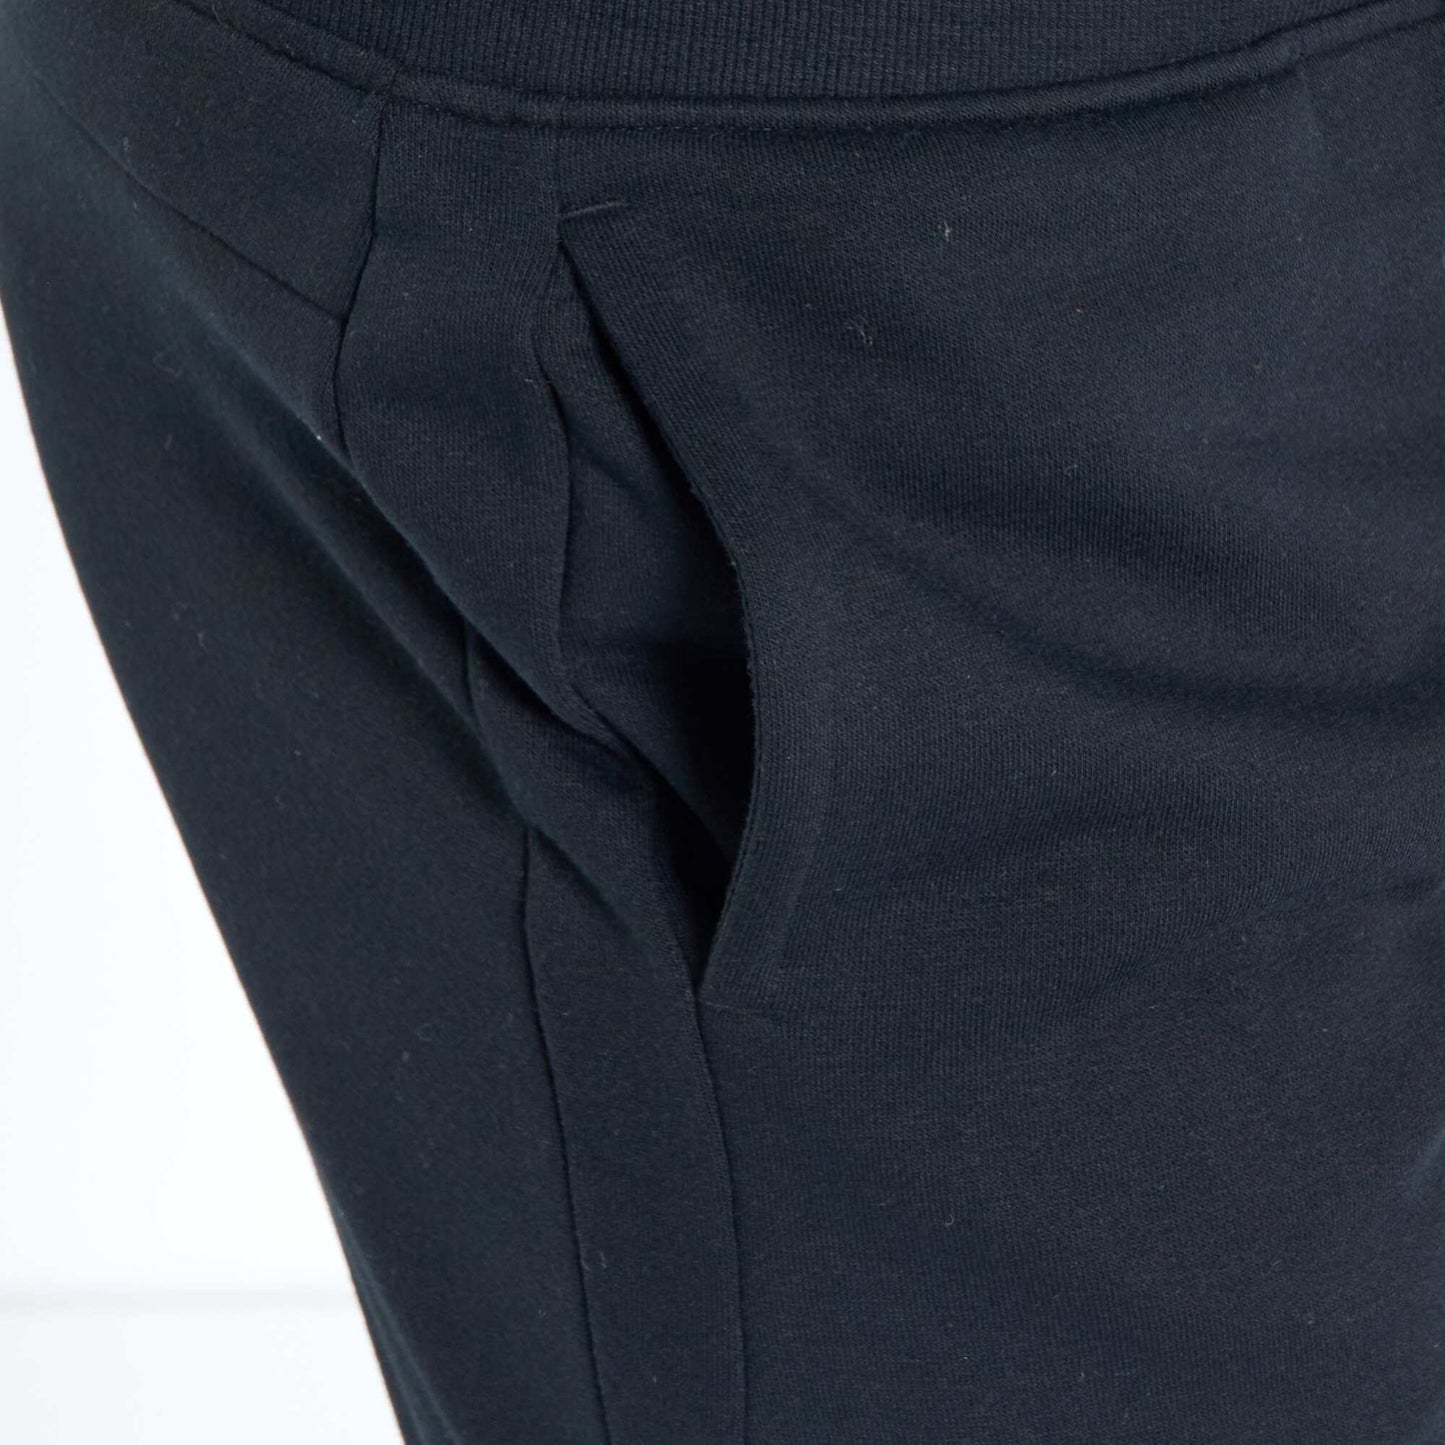 Pantalon de jogging empiècements genoux noir